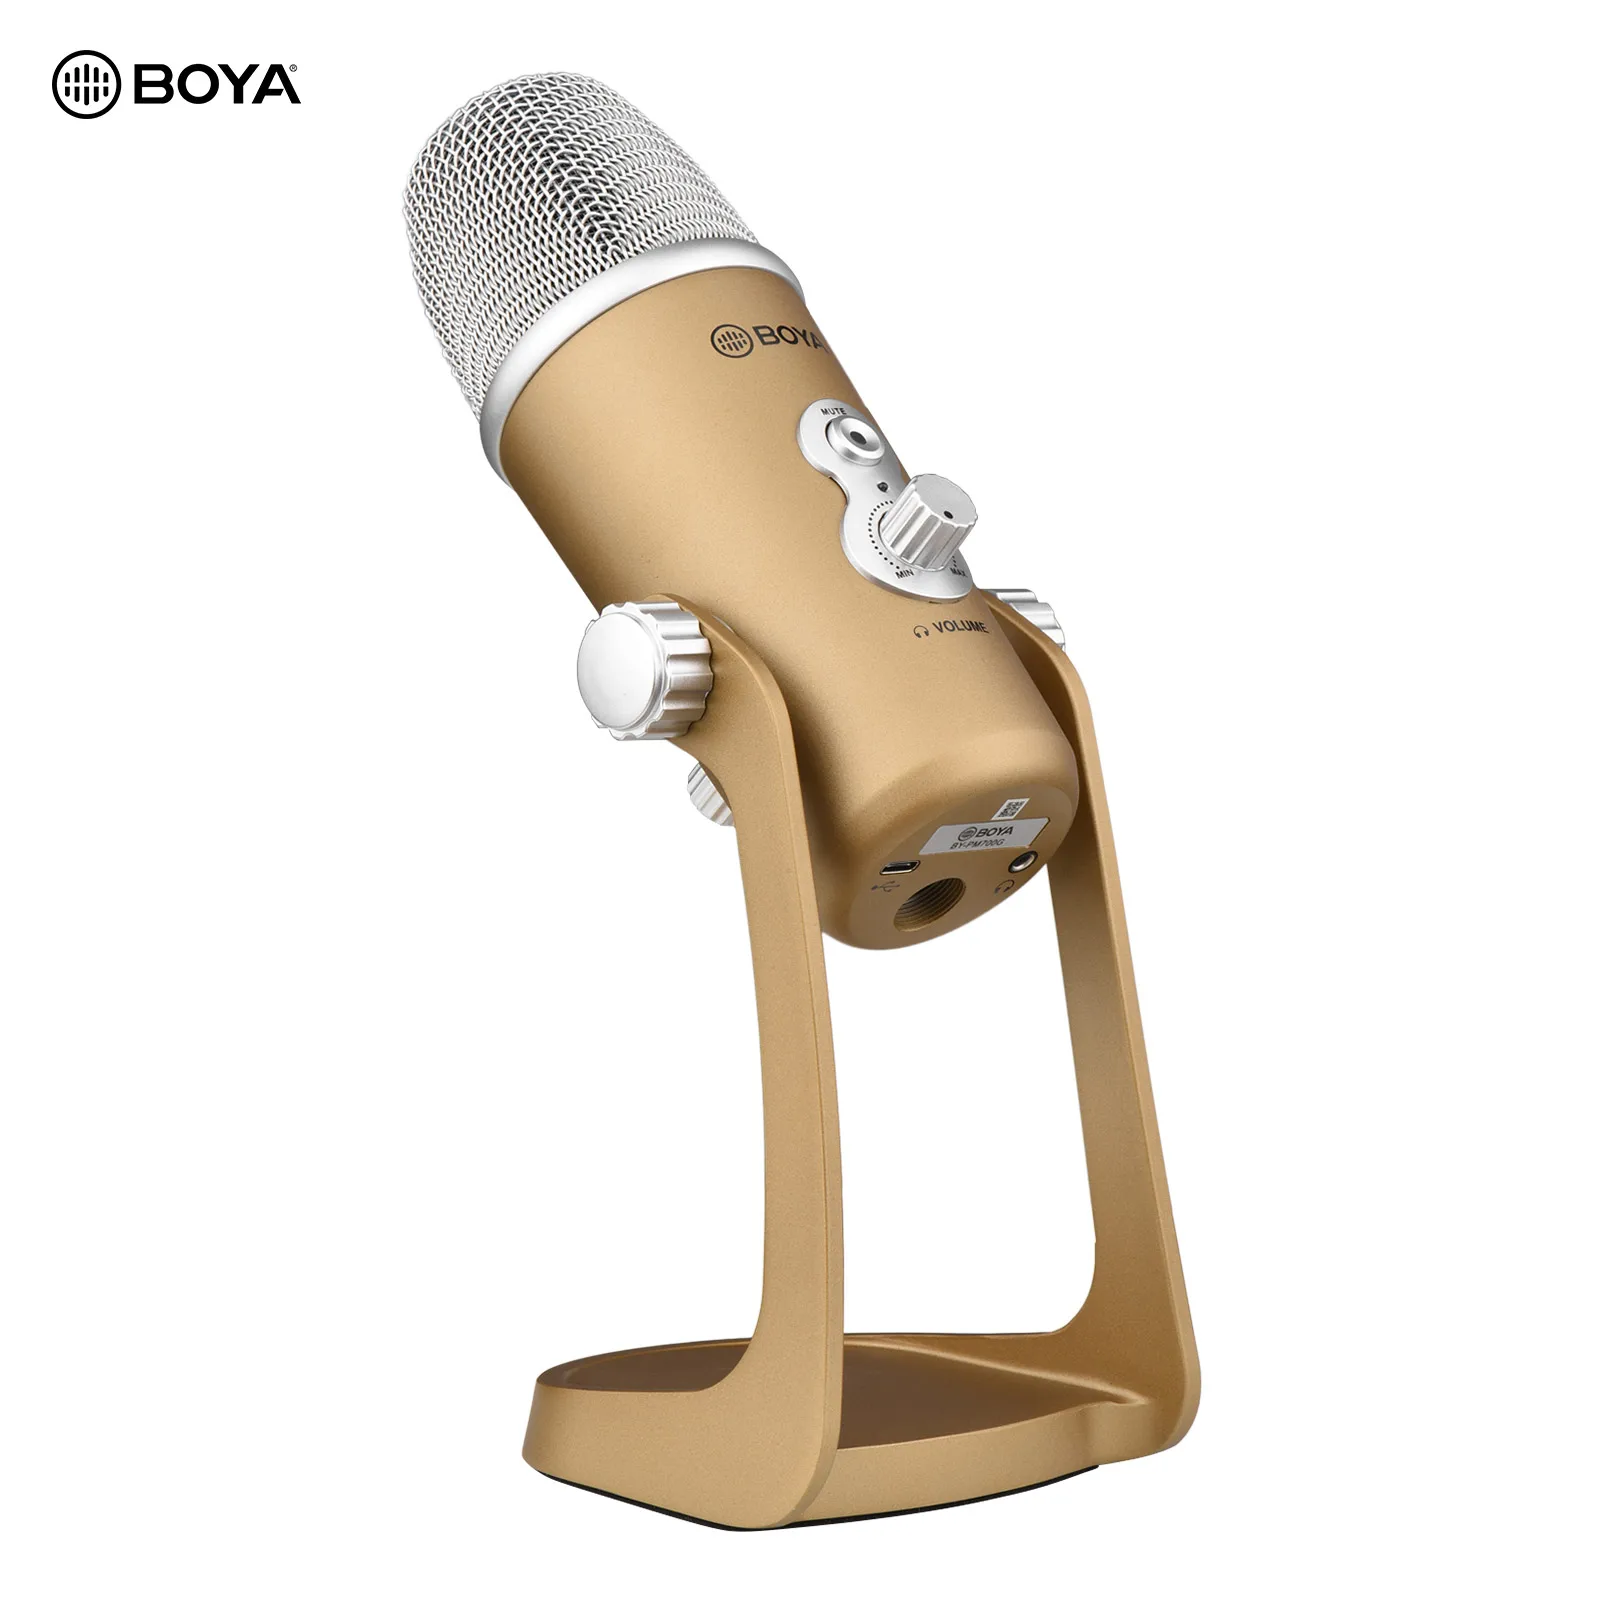 

Микрофон BOYA BY-PM700, USB, настольный металлический компьютер, конденсаторный микрофон с подставкой для ПК, ноутбука, записи голоса, для Windows, Mac